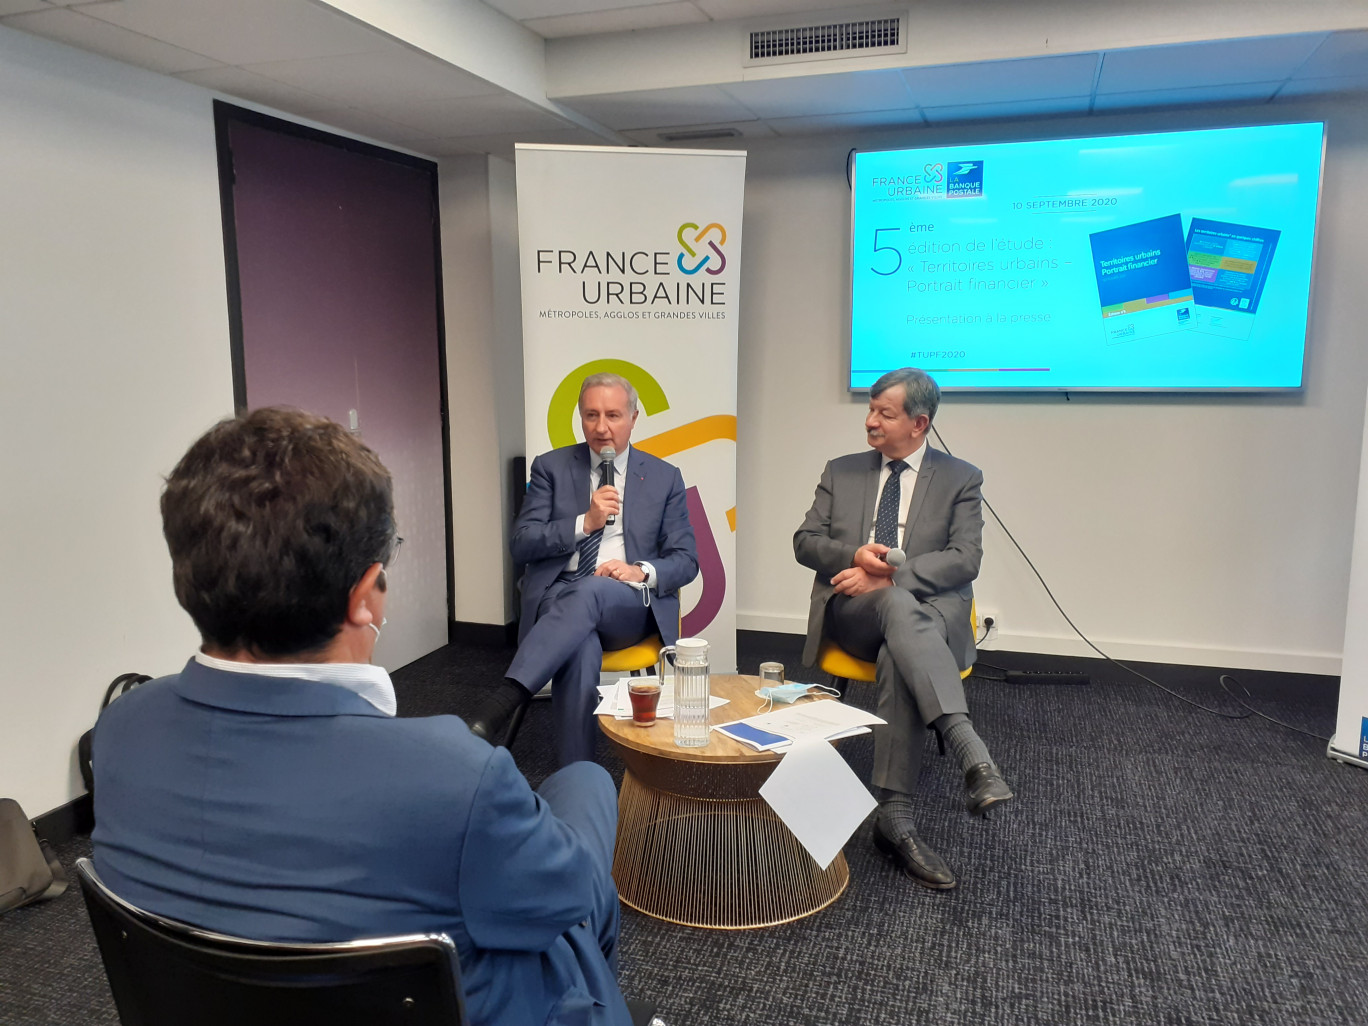 De gauche à droite : Jean-Luc Moudenc, président de France Urbaine et Luc Alain Vervisch, directeur des études de la Banque Postale.